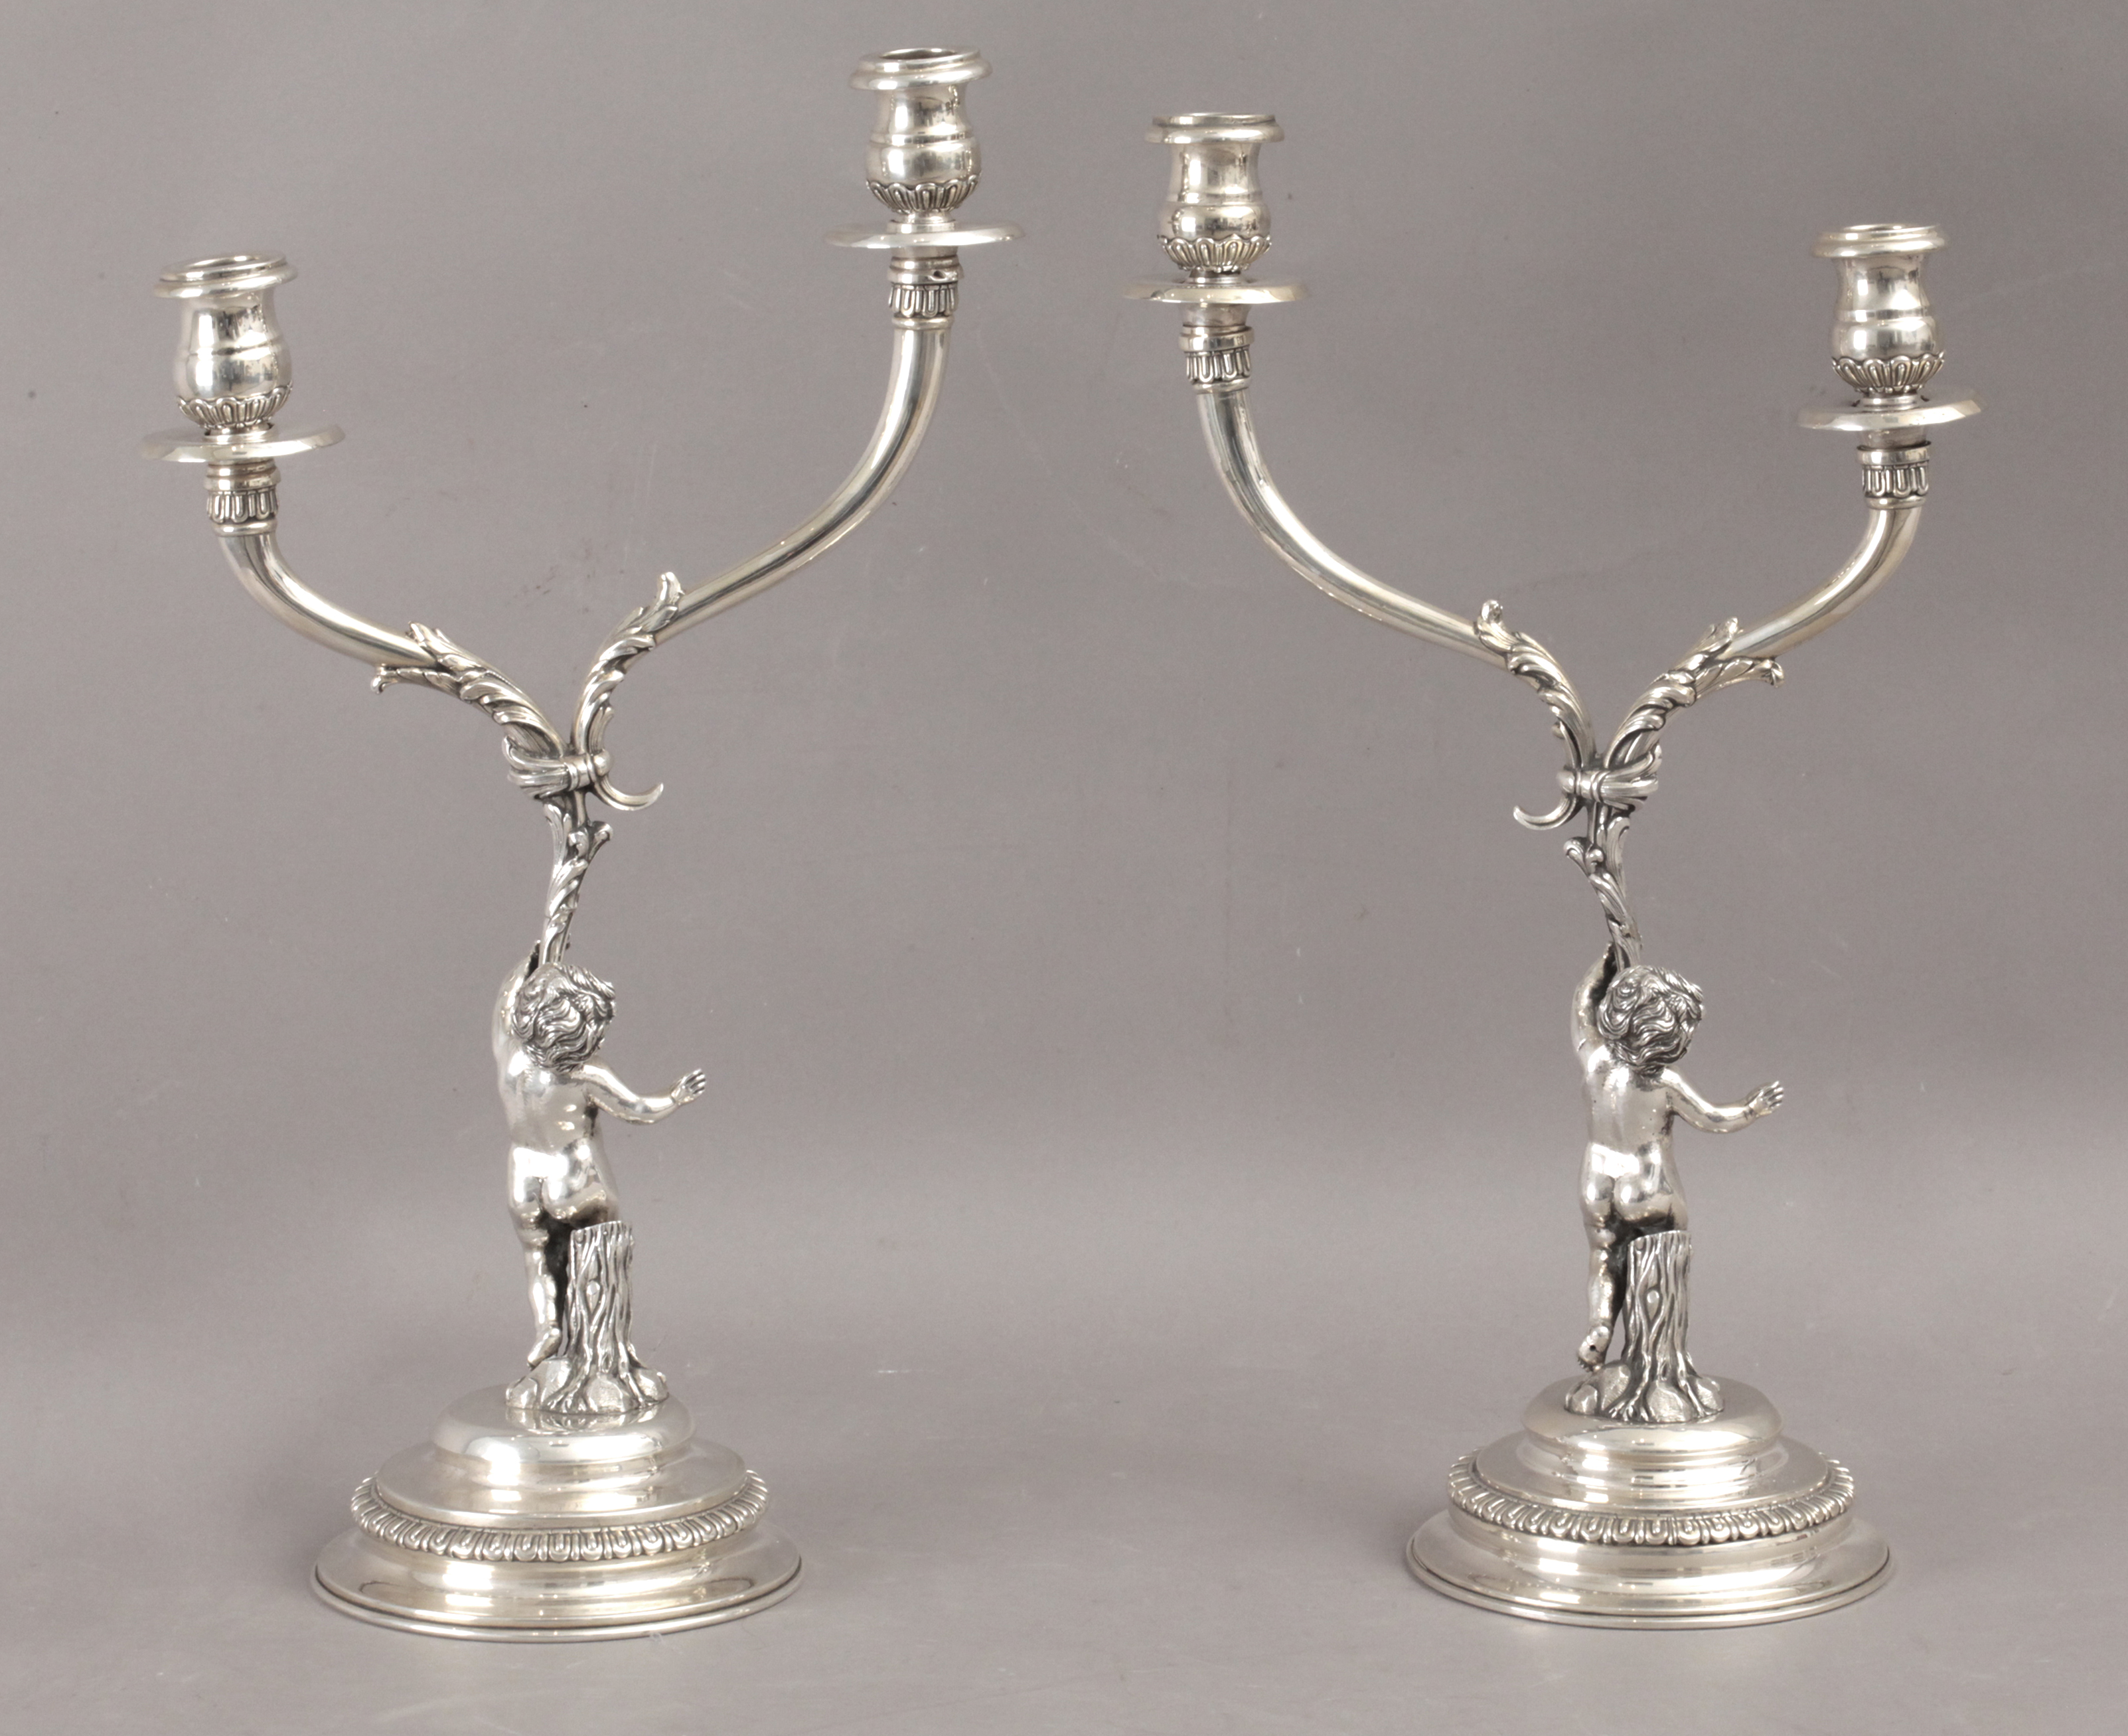 Masriera y Carreras. A pair of 20th century silver candelabras - Image 4 of 5